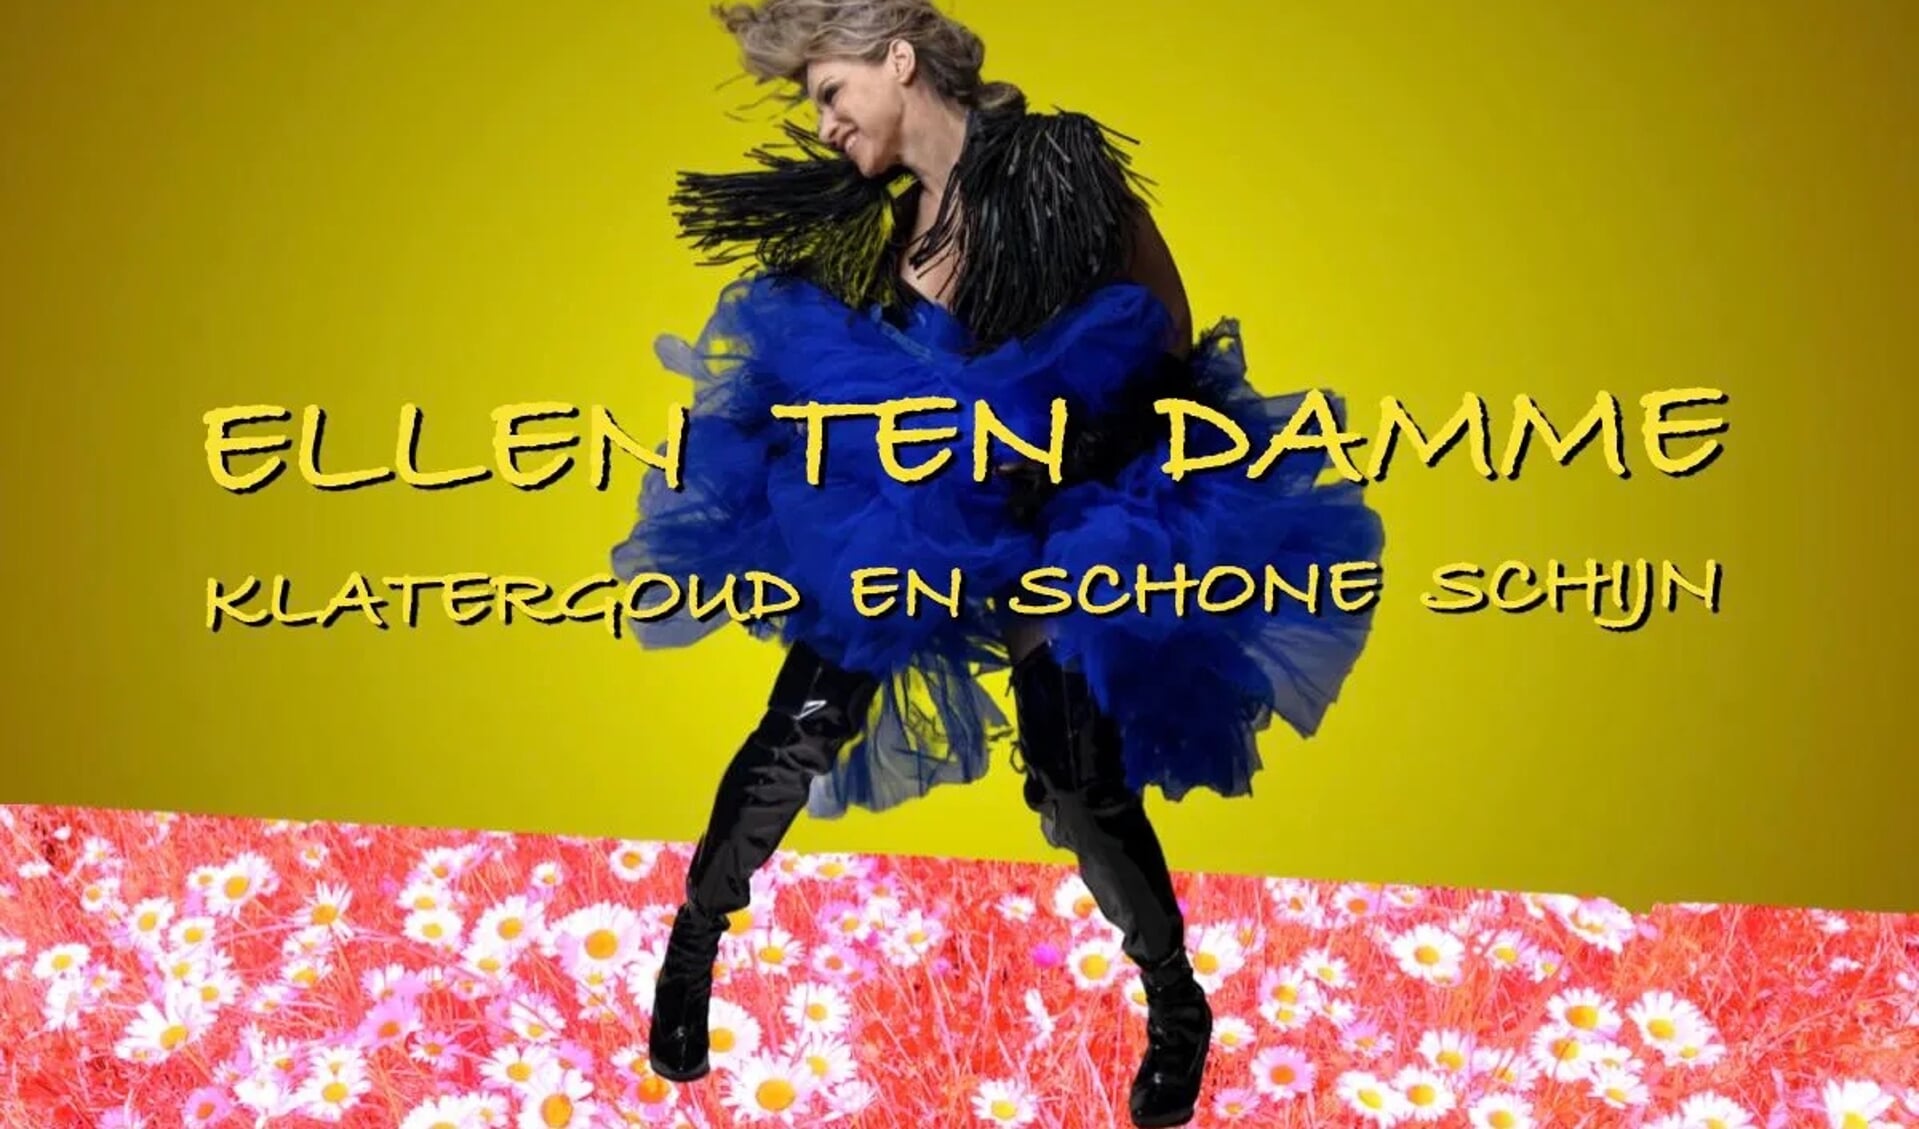 Ellen ten Damme en band | Klatergoud en Schone Schijn - Fransche Zomer aan het Spoel